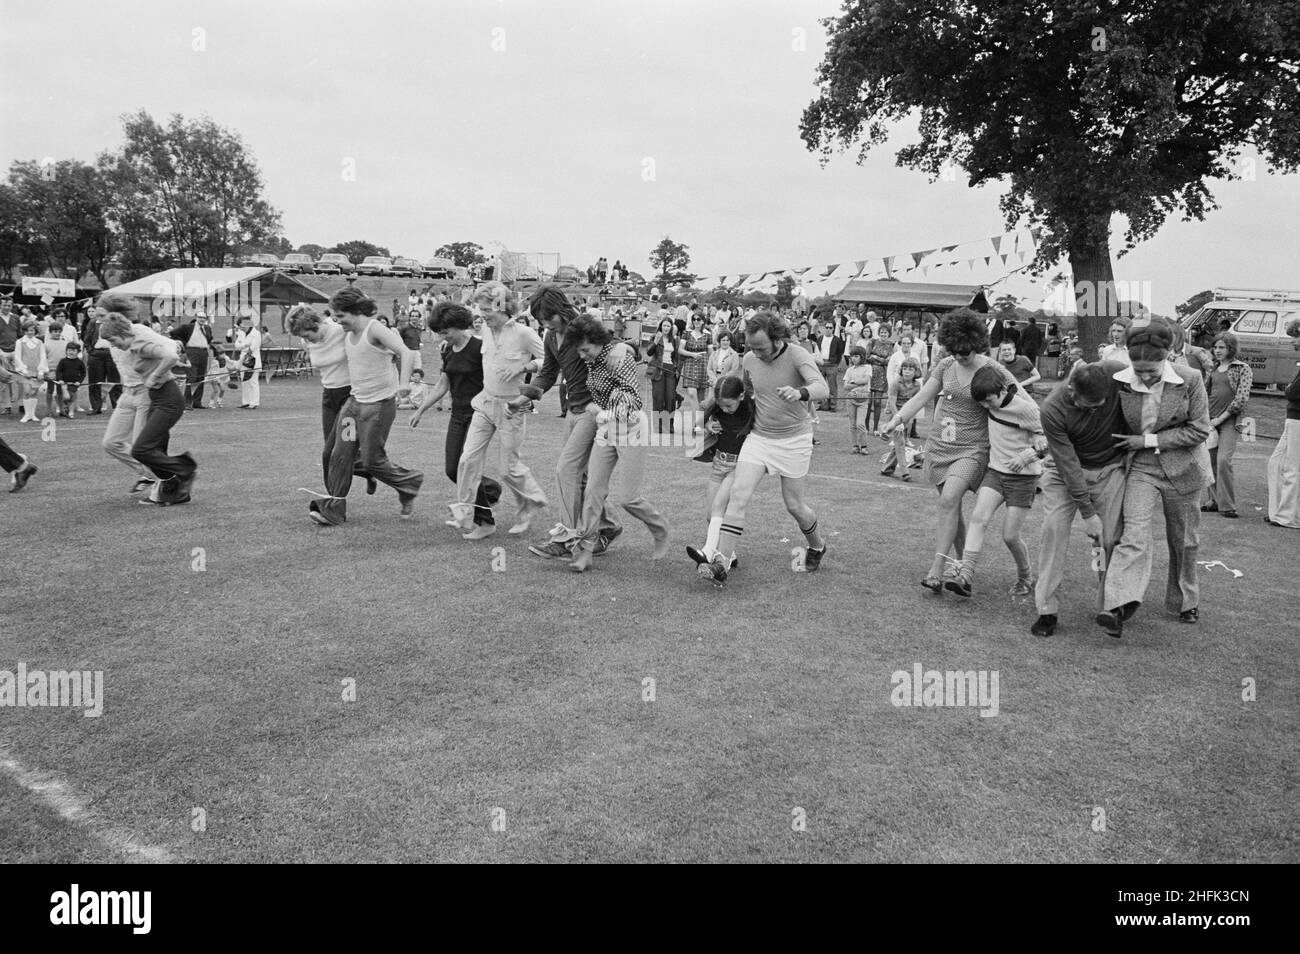 Laing Sports Ground, Rowley Lane, Elstree, Barnett, London, 09/06/1973. Teilnehmer, die während des jährlichen Gala-Tages auf dem Laing Sports Ground in Elstree an einem dreibeinigen Rennen teilnehmen. Der jährliche Gala-Tag fand am 9th. Juni 1973 auf dem Laing Sports Ground statt. Zu den Attraktionen gehörten Hundevorführungen der Polizei, Modellflugzeuge, die Royal British Legion Band, Kinderrennen und Sport. Am Abend gab es Tanz und Bingo im Club House, und 'Beer and Beat' im Festzelt. Über 2.000 Personen nahmen an der Gala Teil, und über 600 Personen blieben für die Abendunterhaltung. Stockfoto